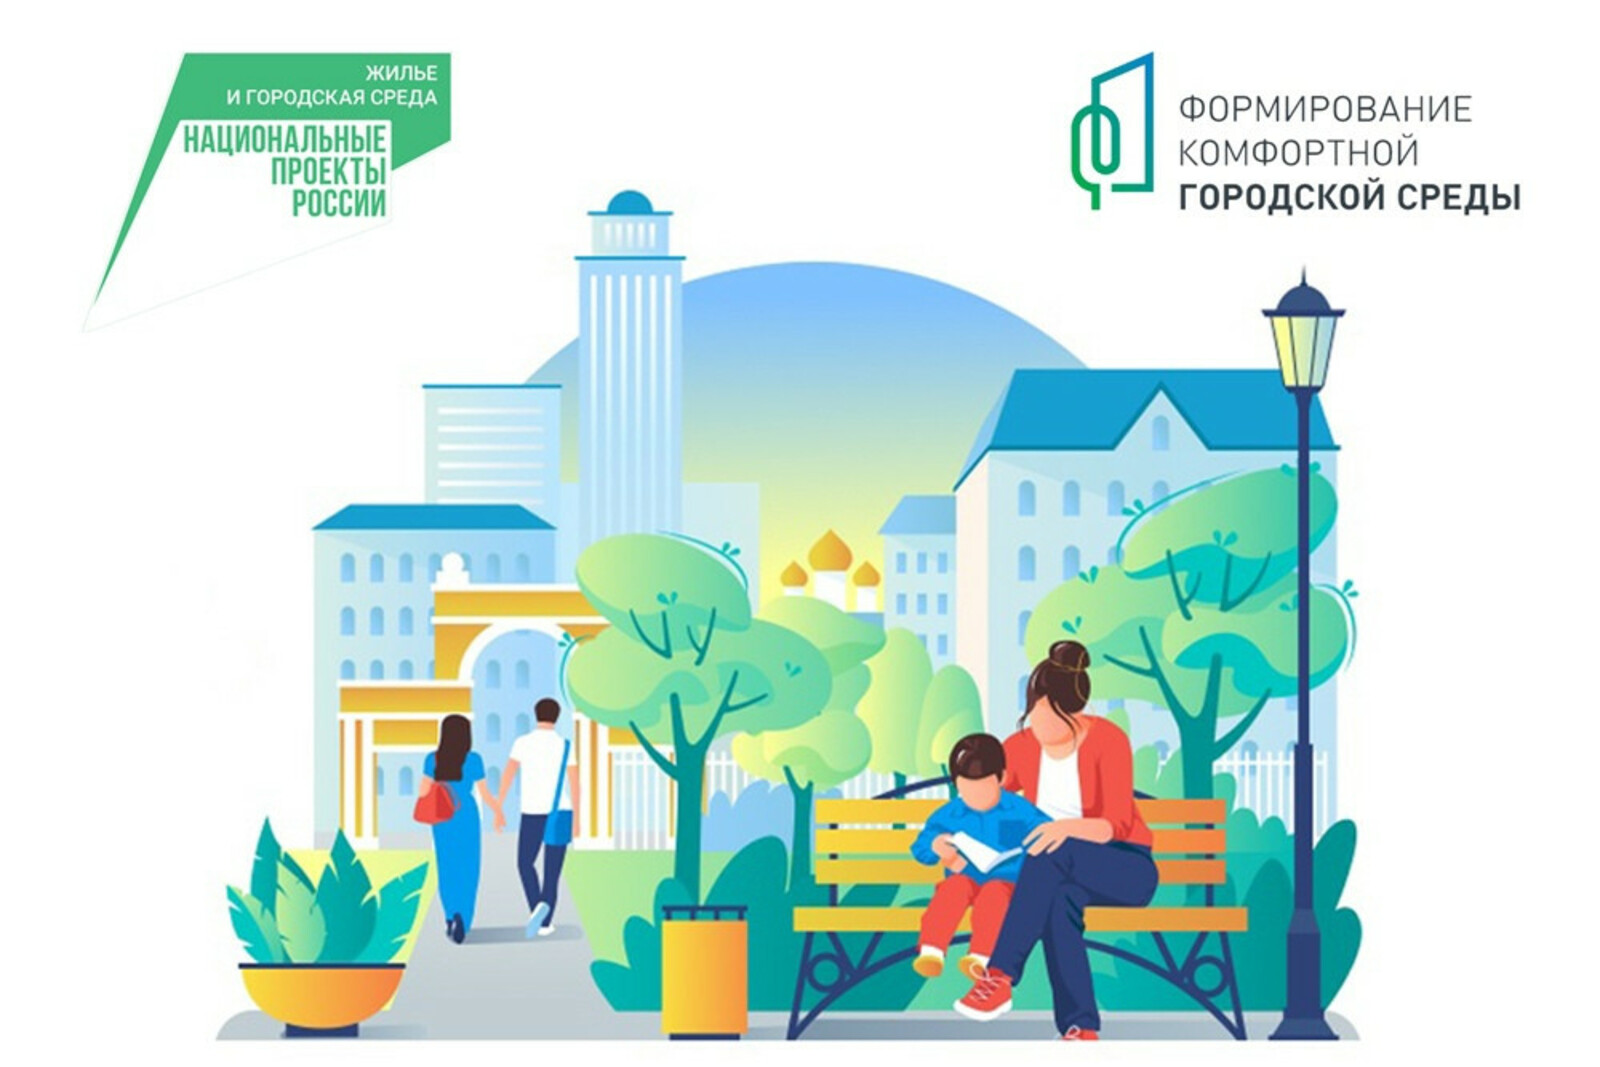 Жителей Мурманской области приглашают стать волонтерами проекта «Формирование комфортной городской среды».